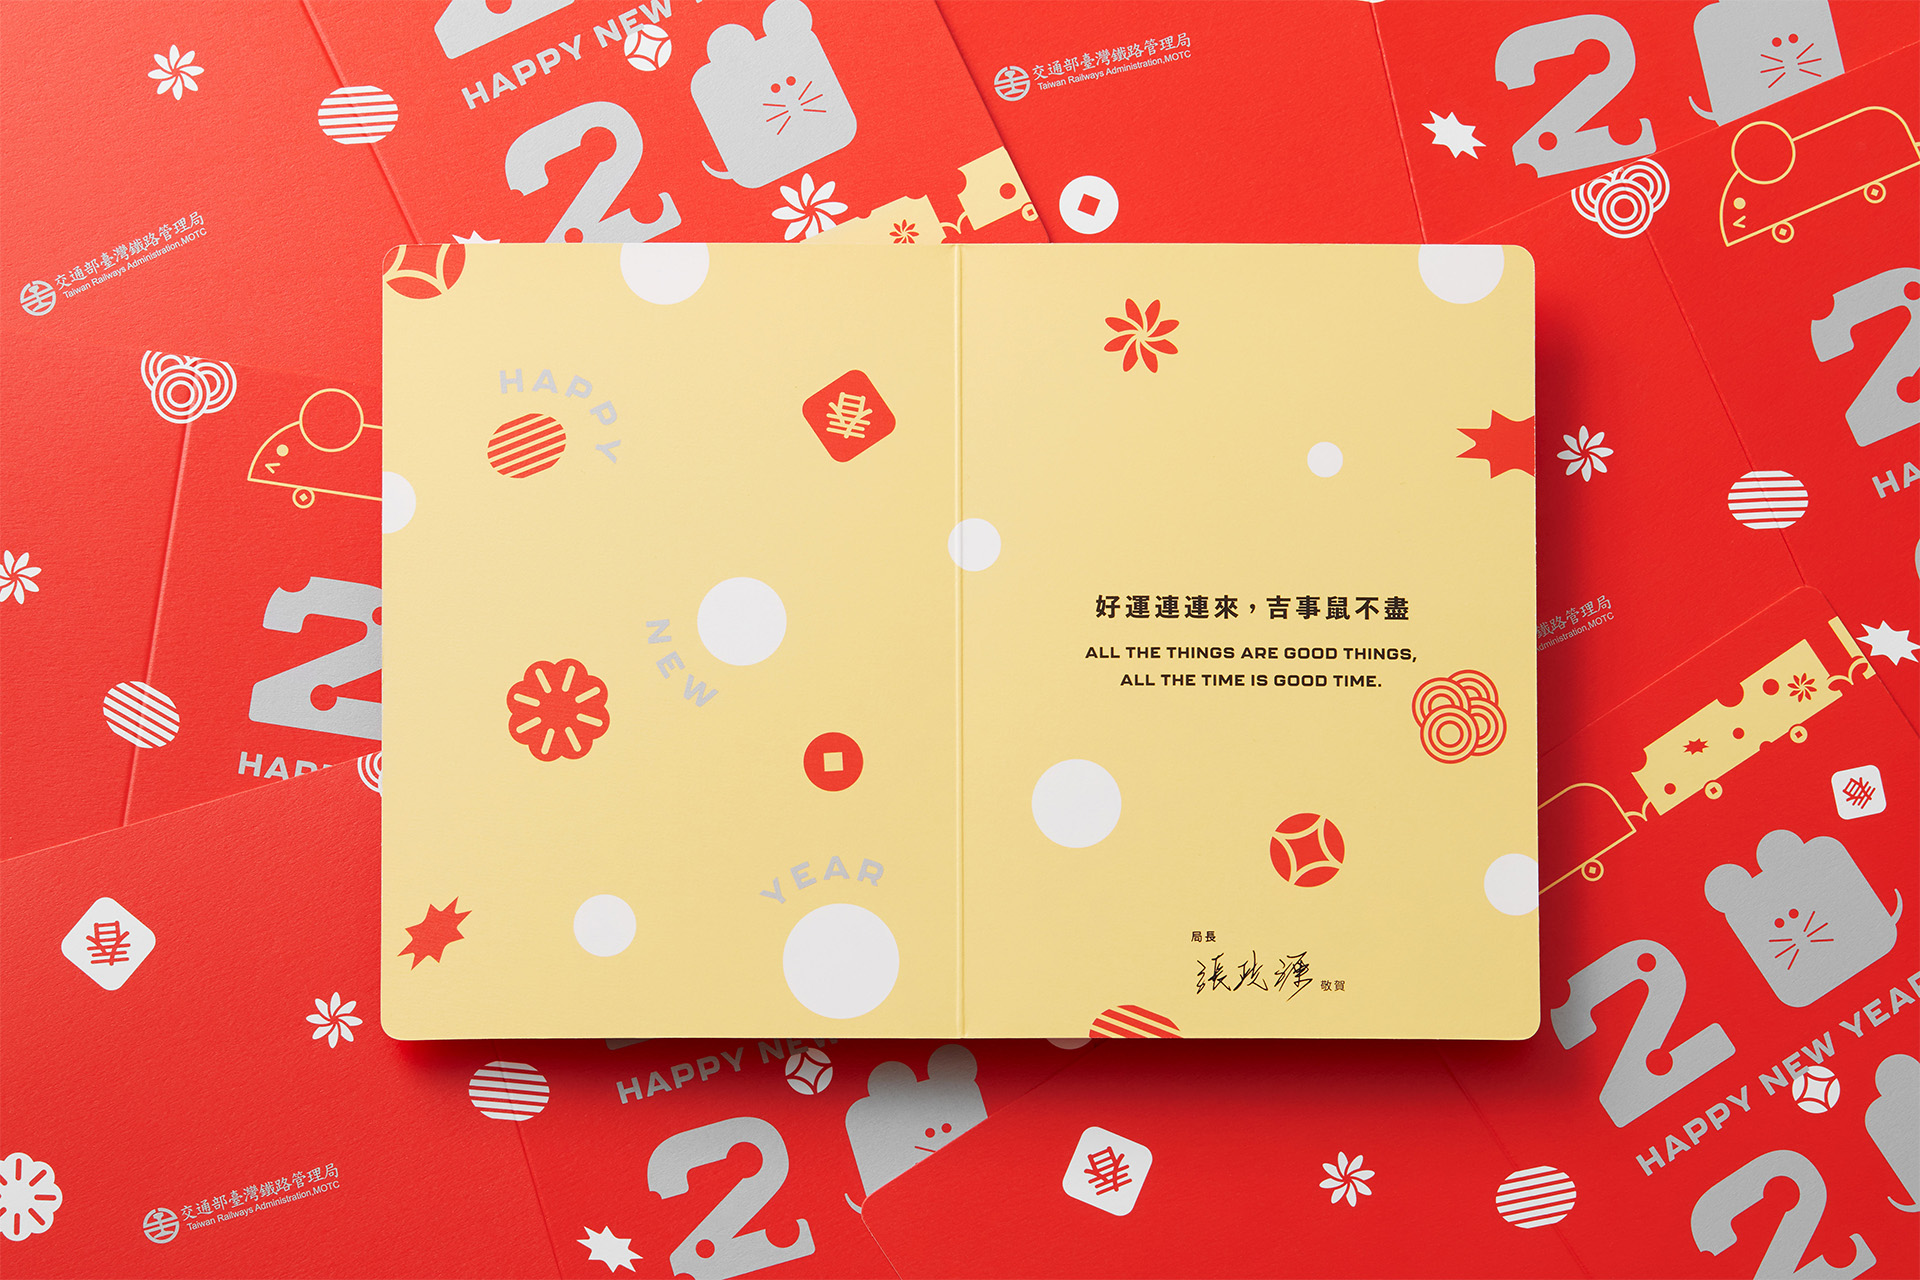 2o2o Greeting card & Red Envelope of TRA